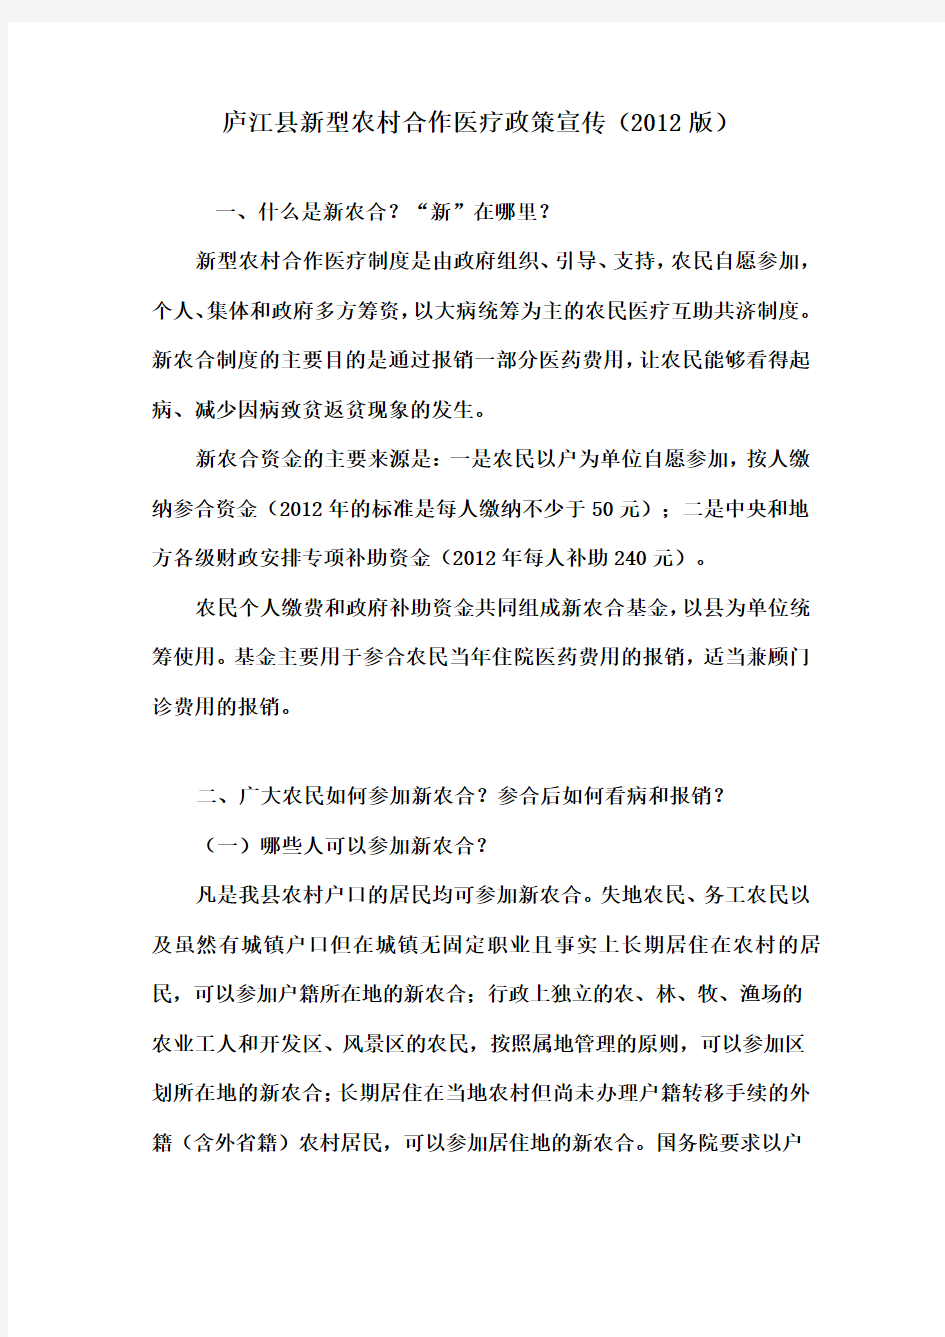 庐江县新型农村合作医疗政策宣传